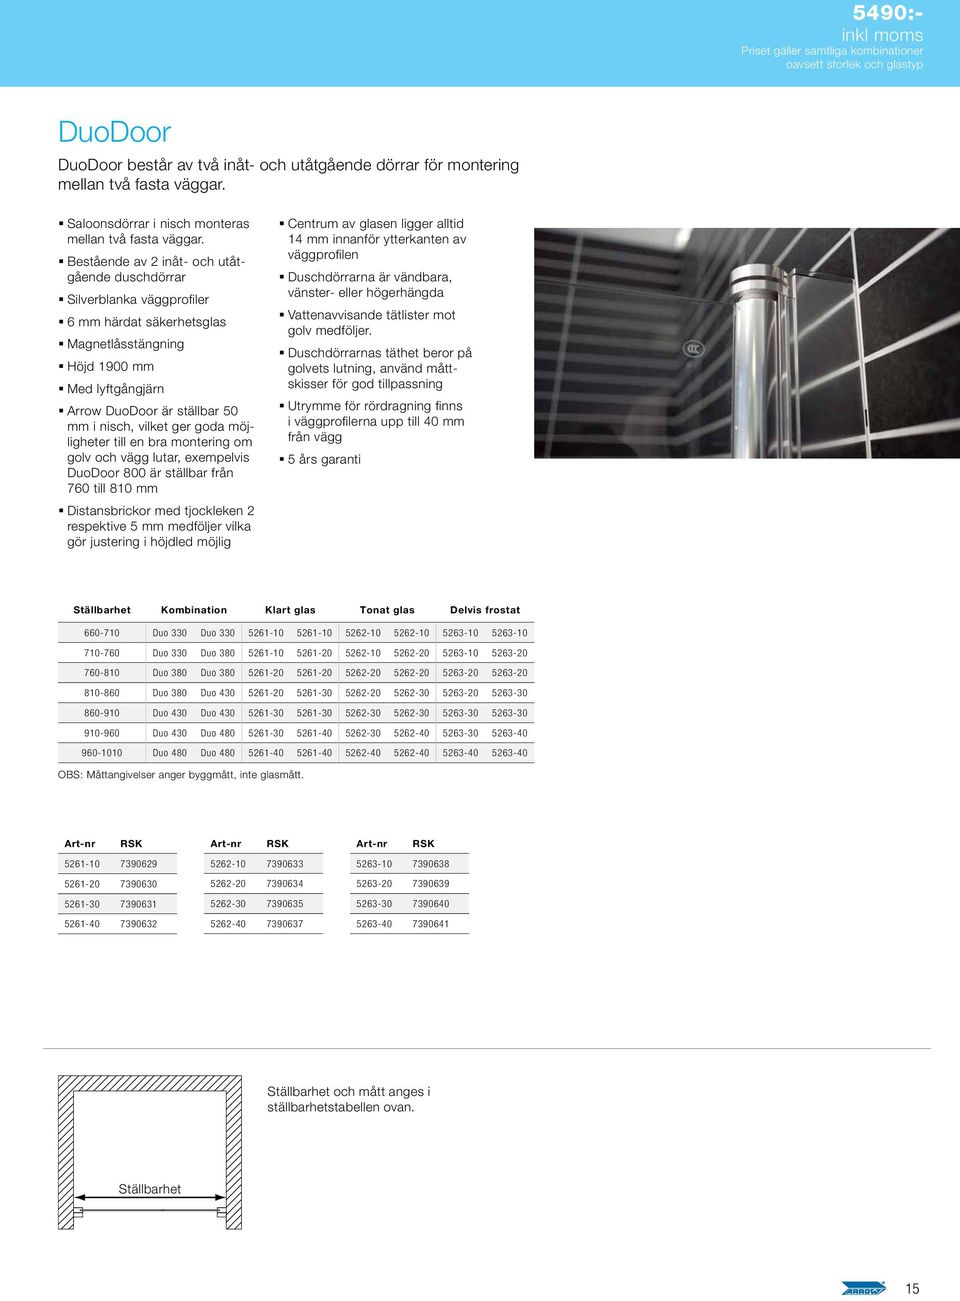 Bestående av 2 inåt- och utåtgående duschdörrar Silverblanka väggprofiler 6 mm härdat säkerhetsglas Magnetlåsstängning Höjd 1900 mm Med lyftgångjärn Arrow DuoDoor är ställbar 50 mm i nisch, vilket